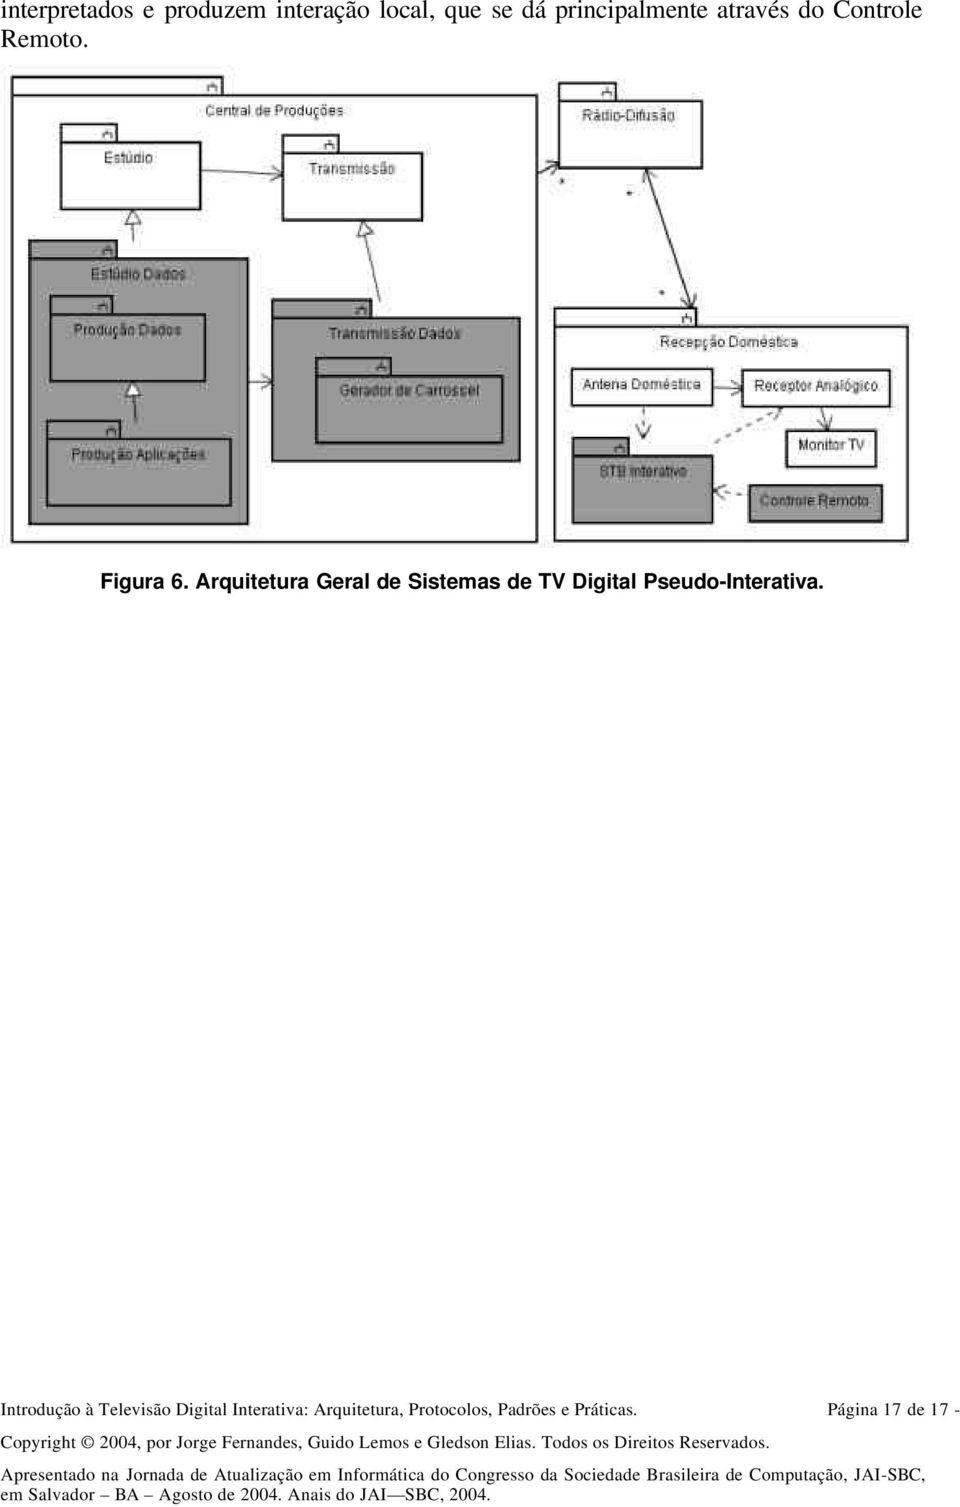 Arquitetura Geral de Sistemas de TV Digital Pseudo-Interativa.